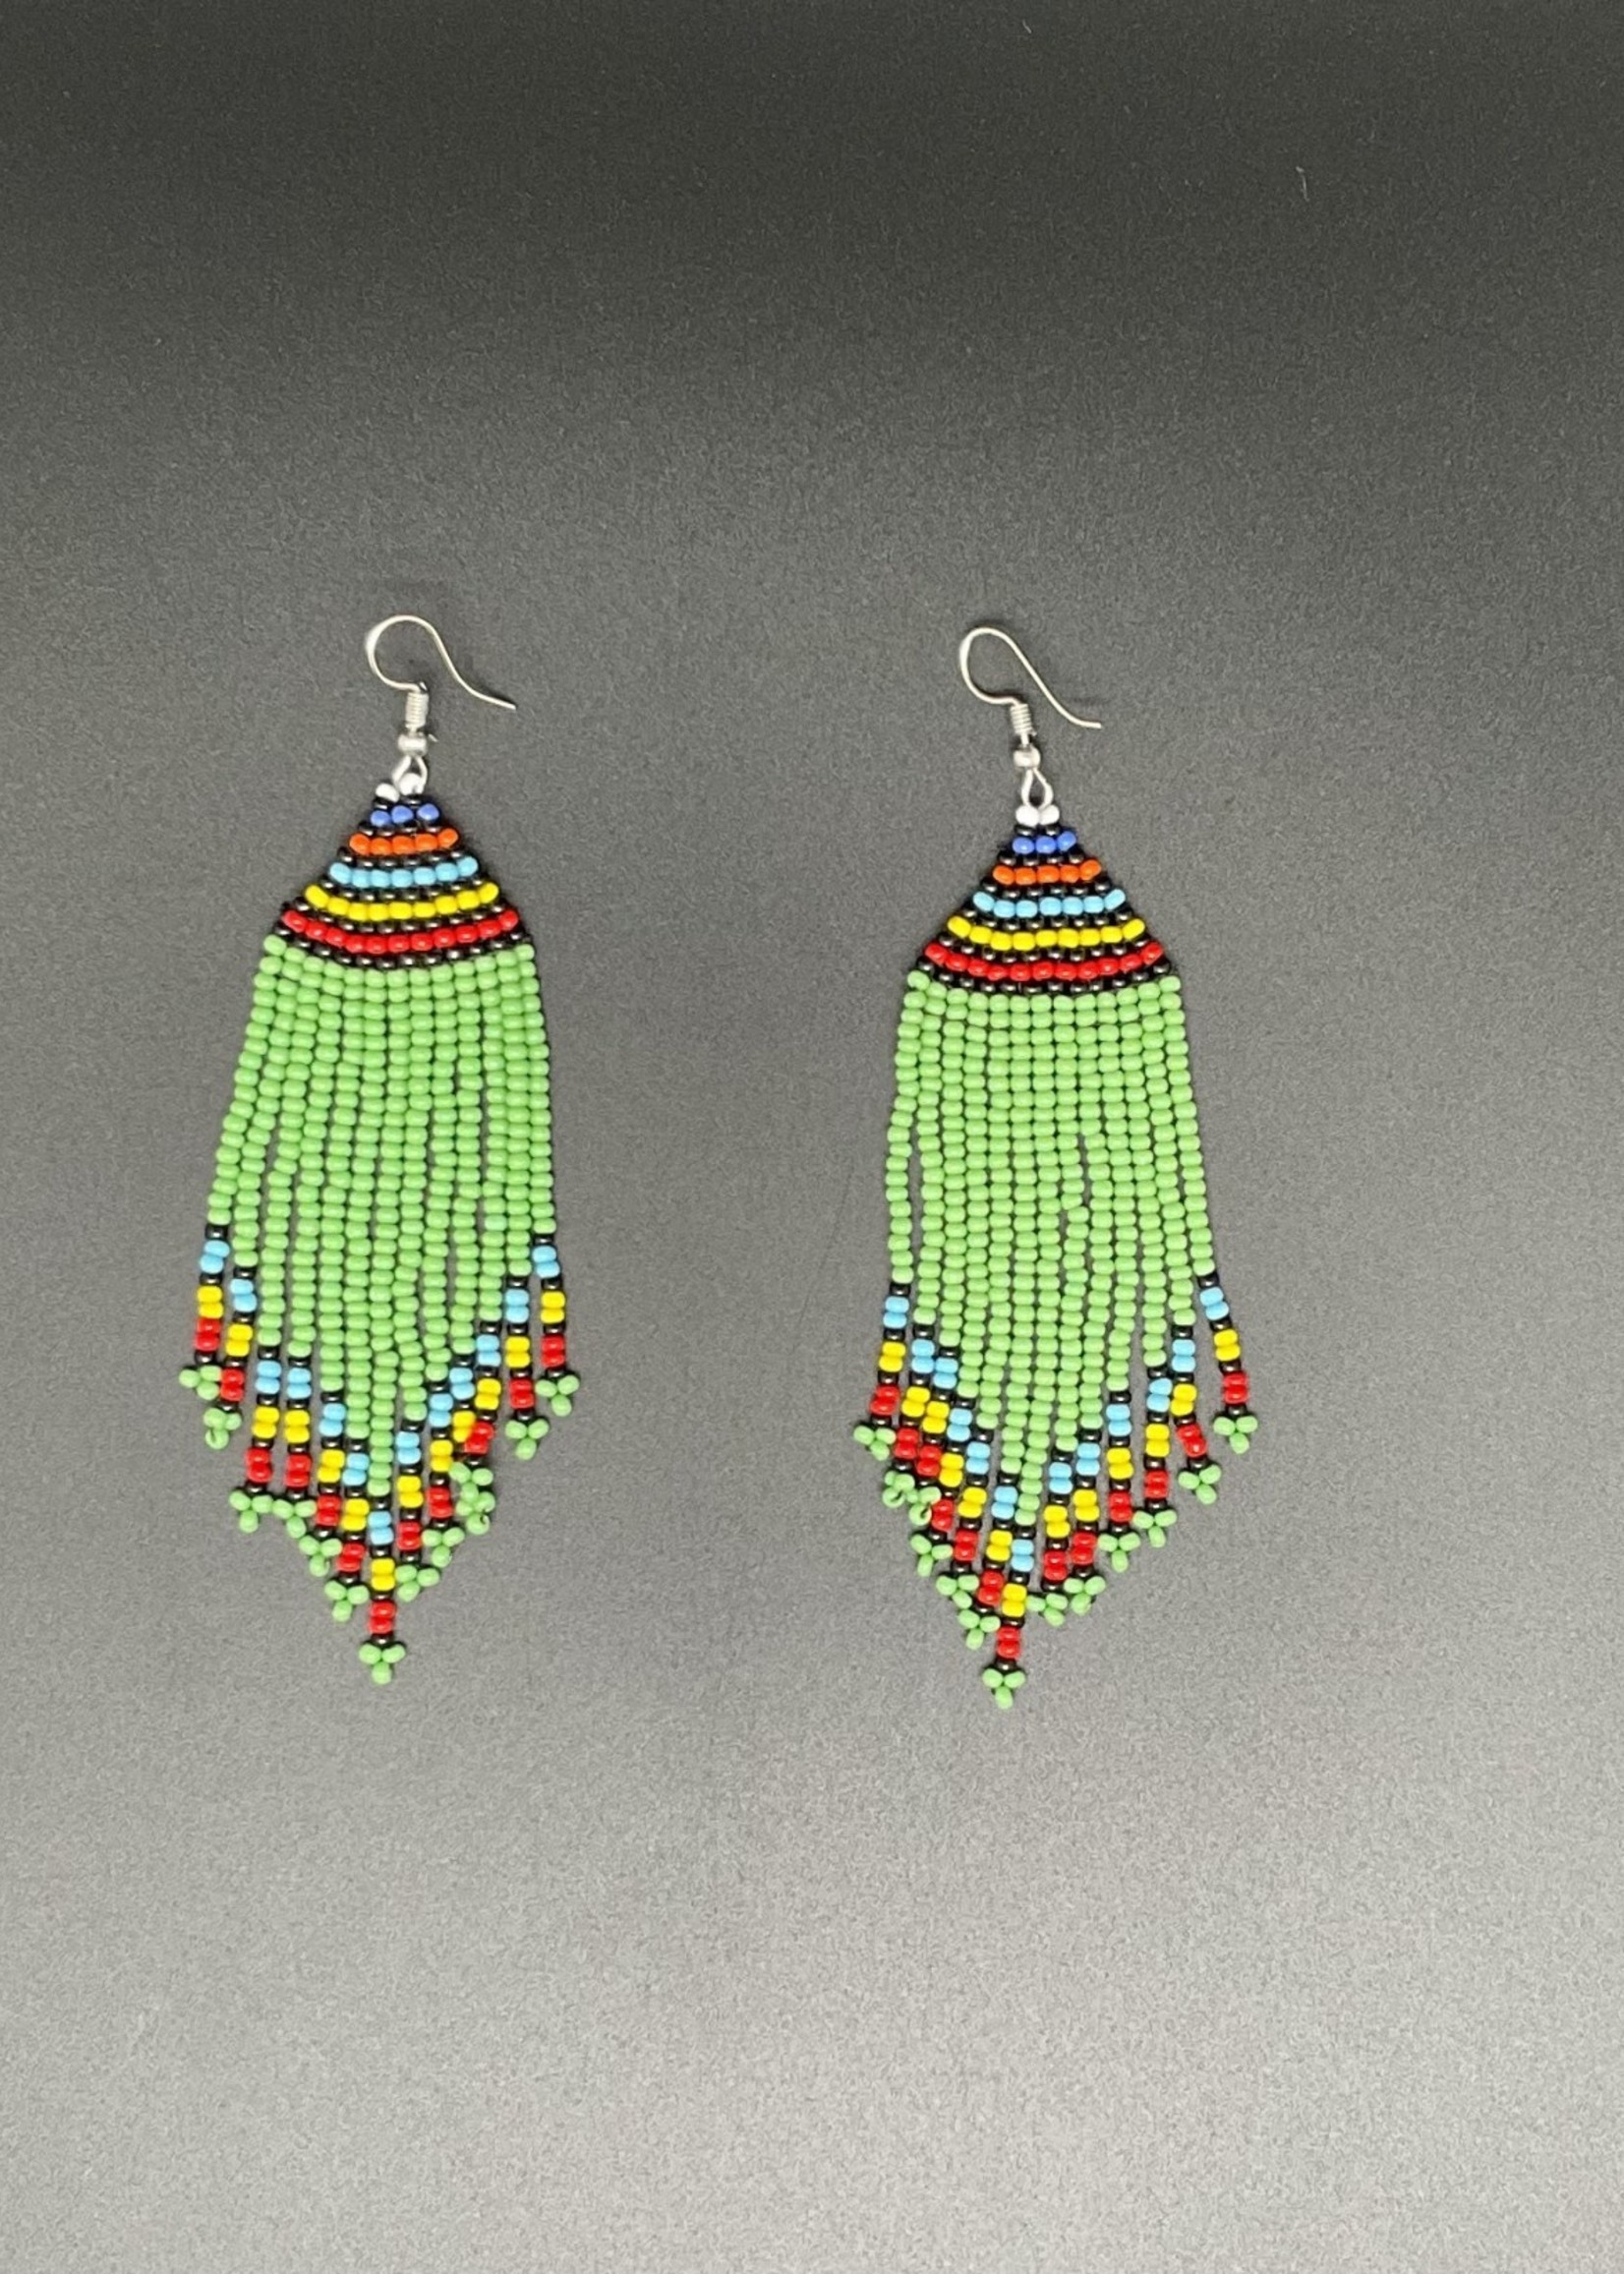 Kenya Long Colorful beaded earrings from Kenya. Green focused